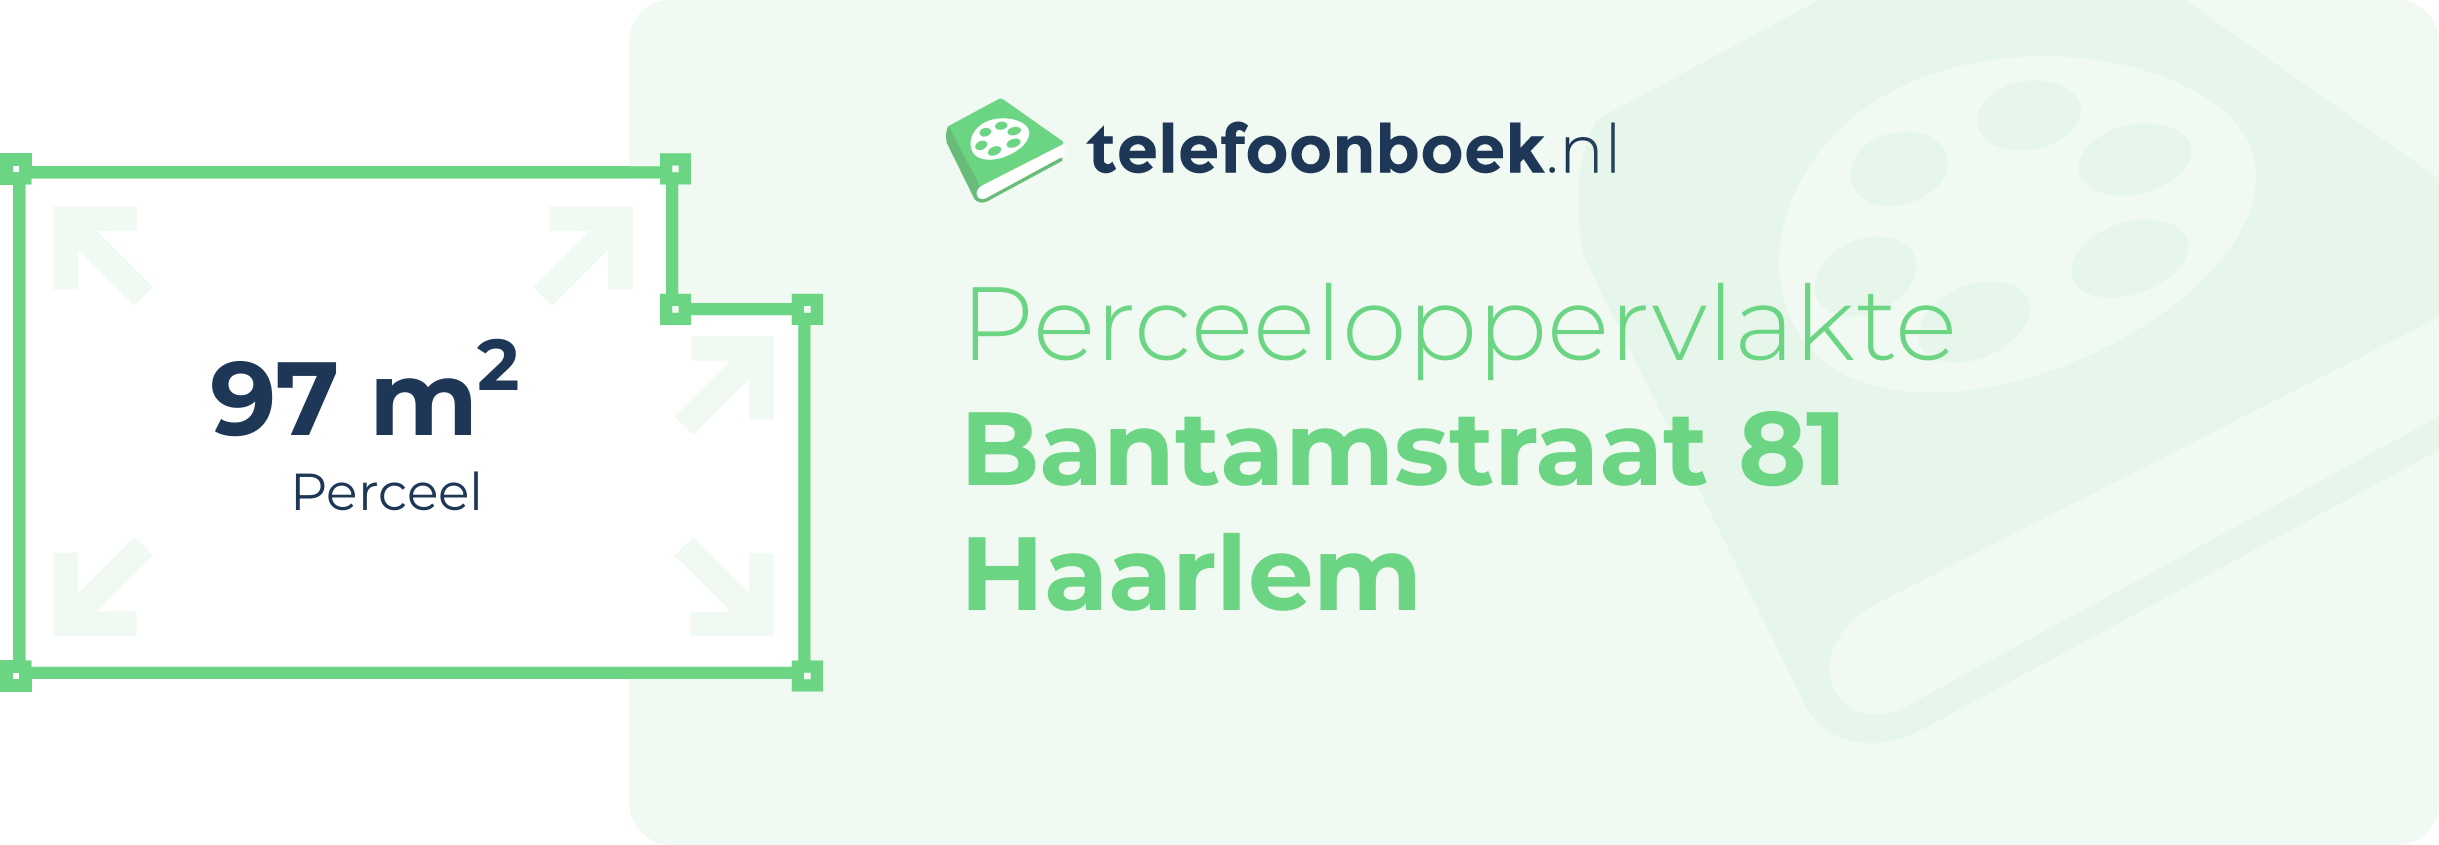 Perceeloppervlakte Bantamstraat 81 Haarlem